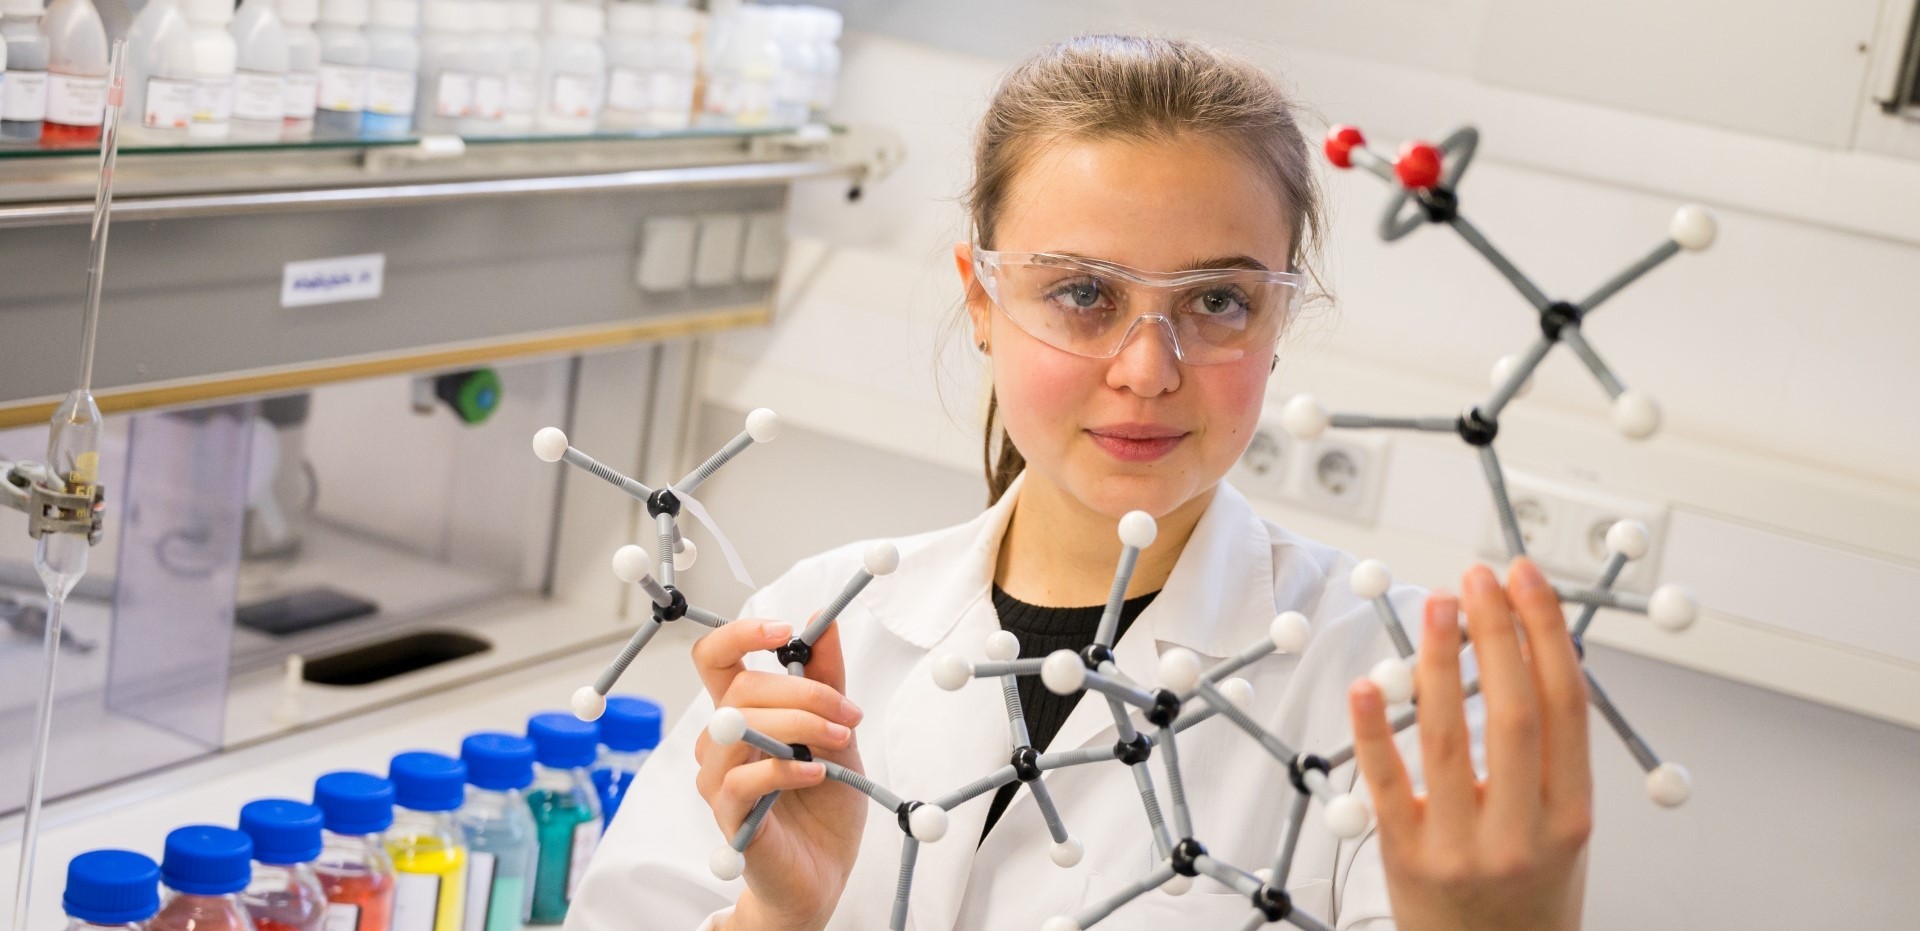 Studentin hält im Labor das Modell einer chemischen Verbindung hoch